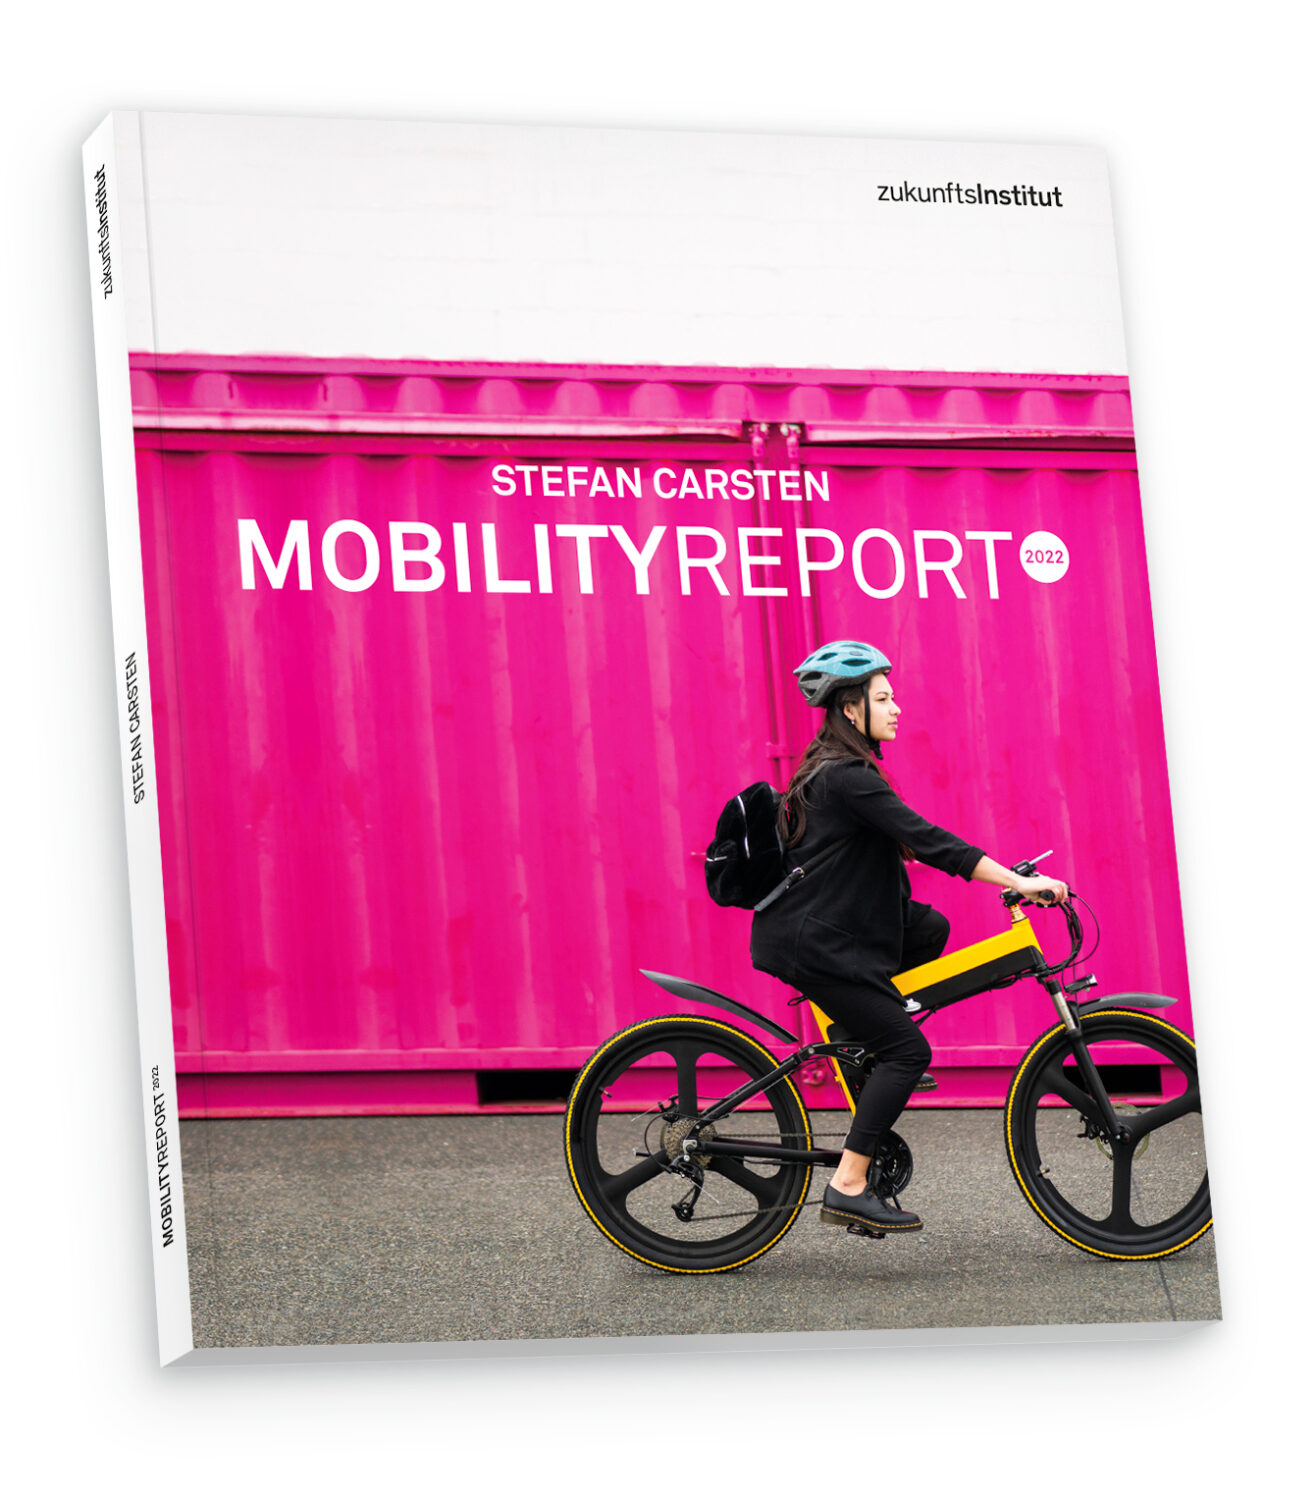 Mobility-Report-2022-Shop-Mockup-1-1-Kopie-scaled Die Mobilität der Zukunft wird klimaneutral - und weiblicher